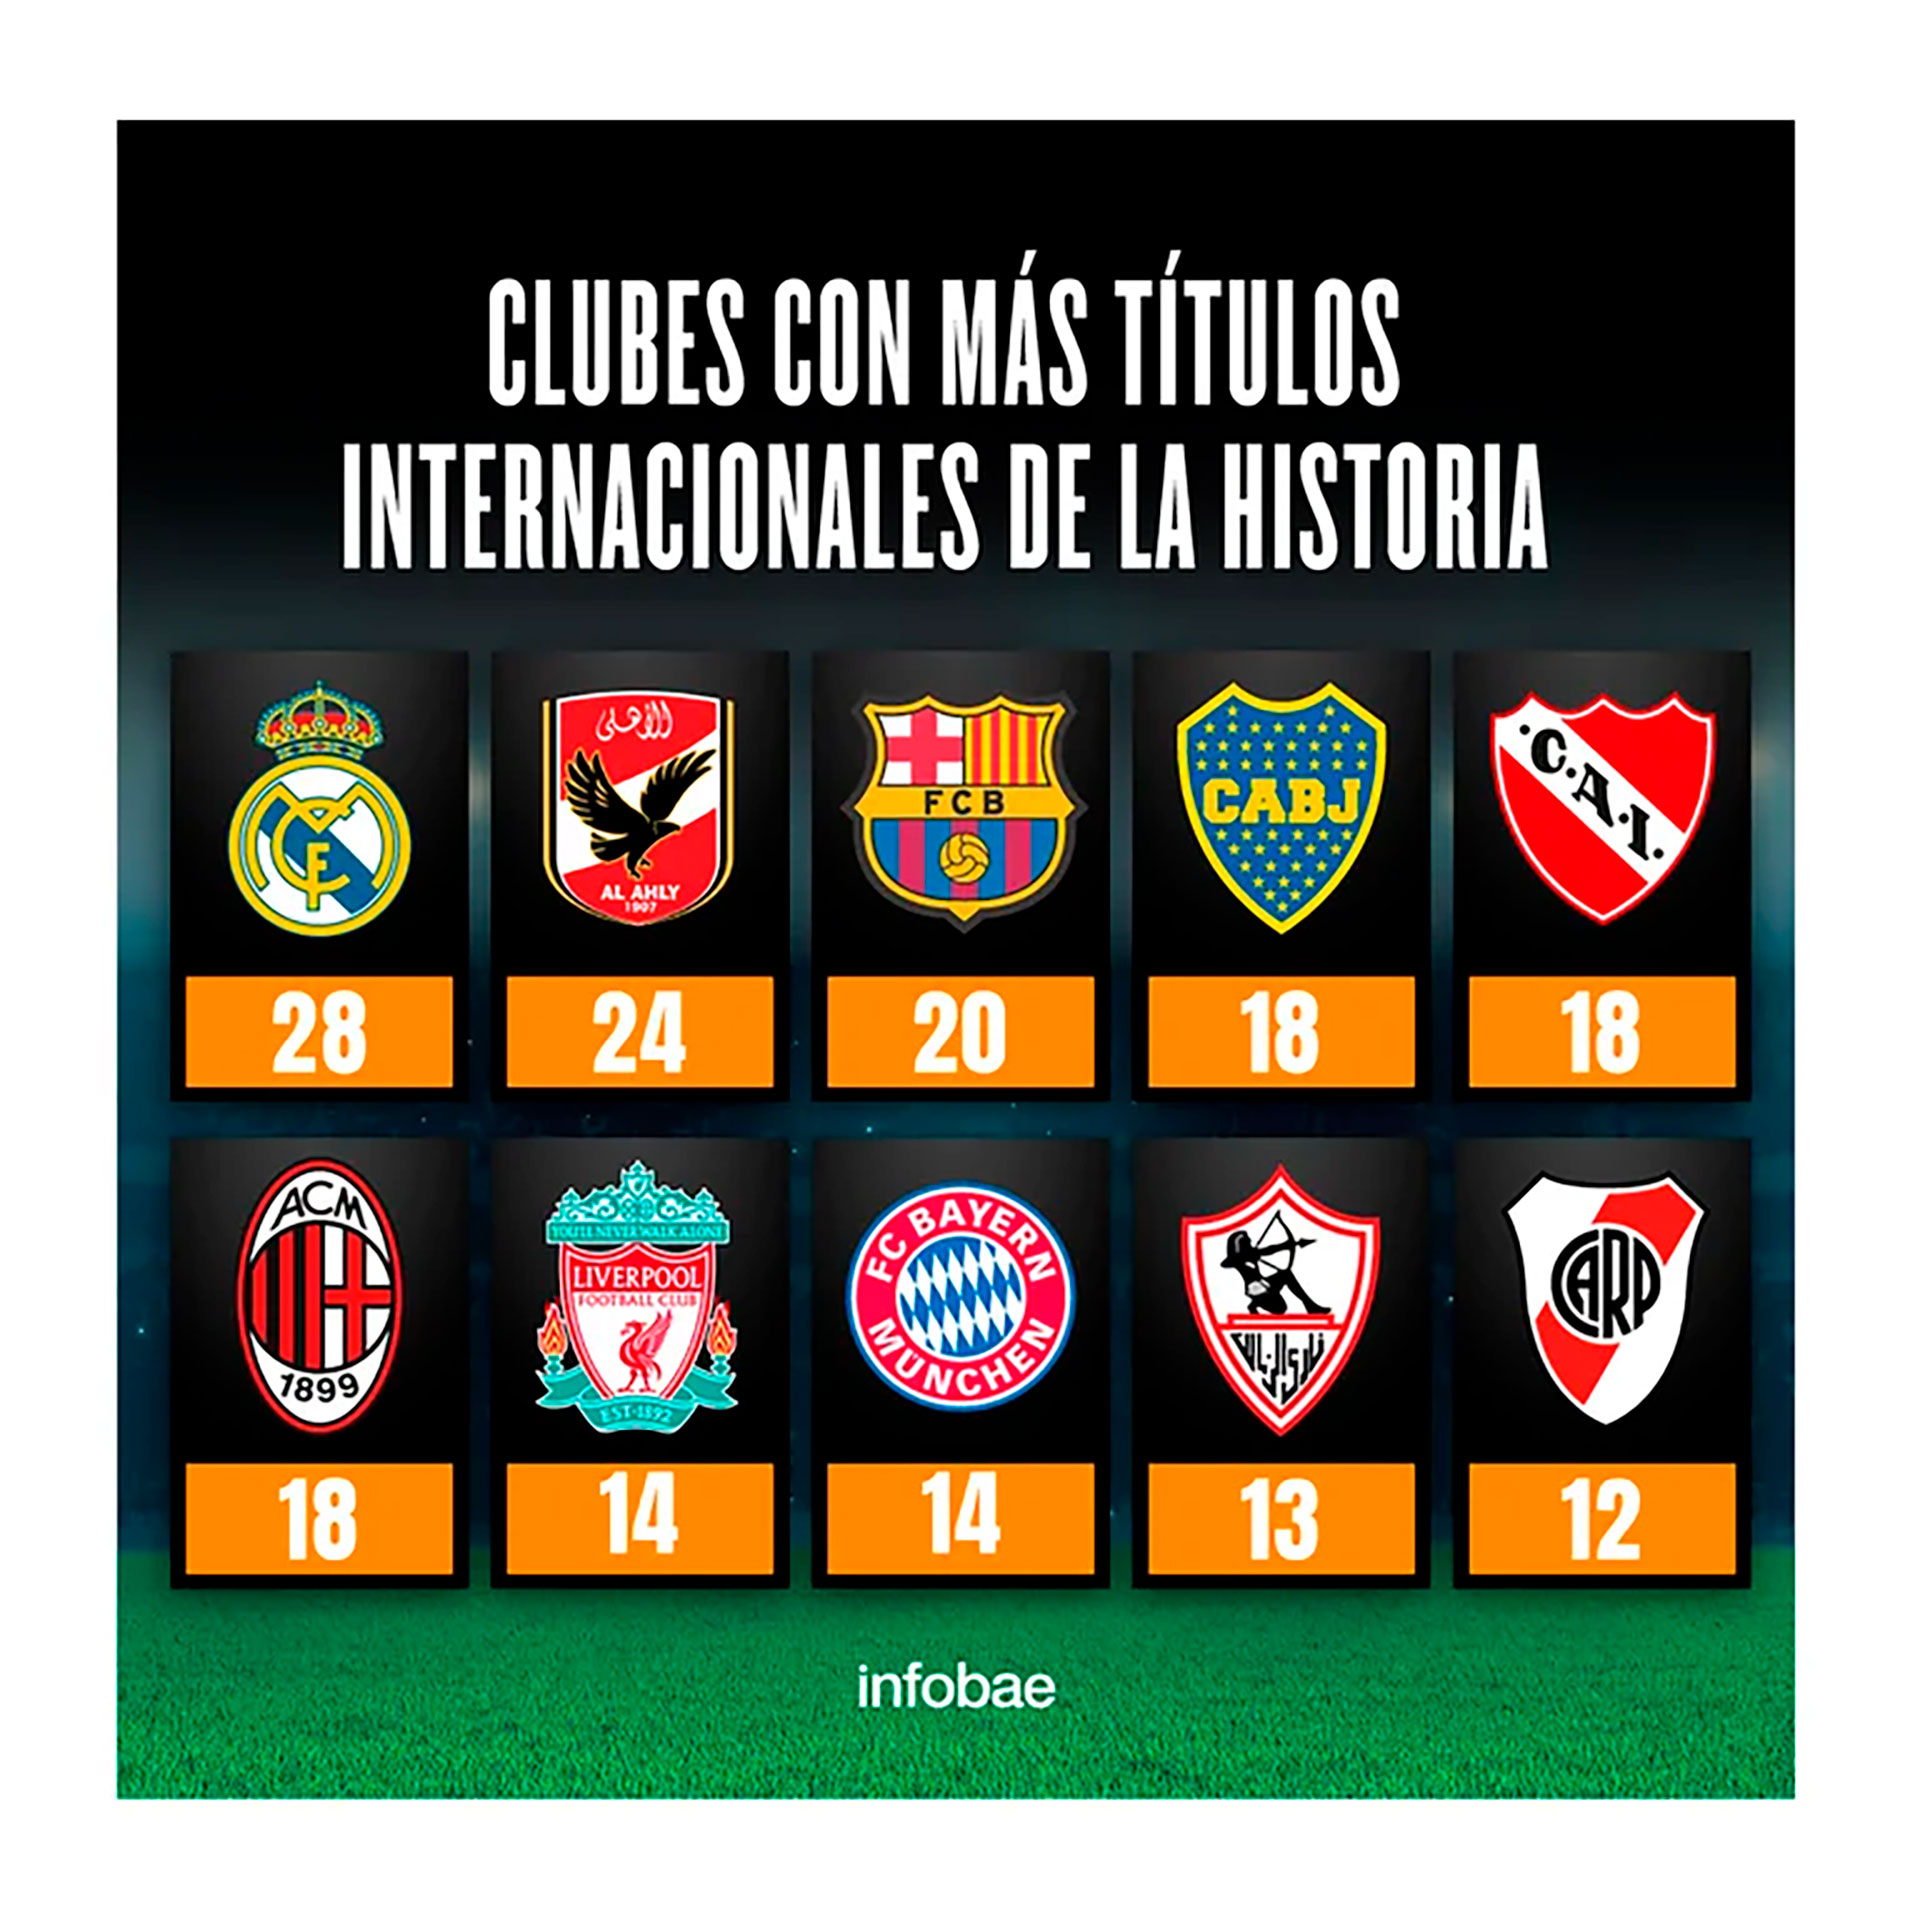 Reina Preferencia Abierto Así quedó la tabla de clubes con más títulos internacionales de la historia  - Infobae